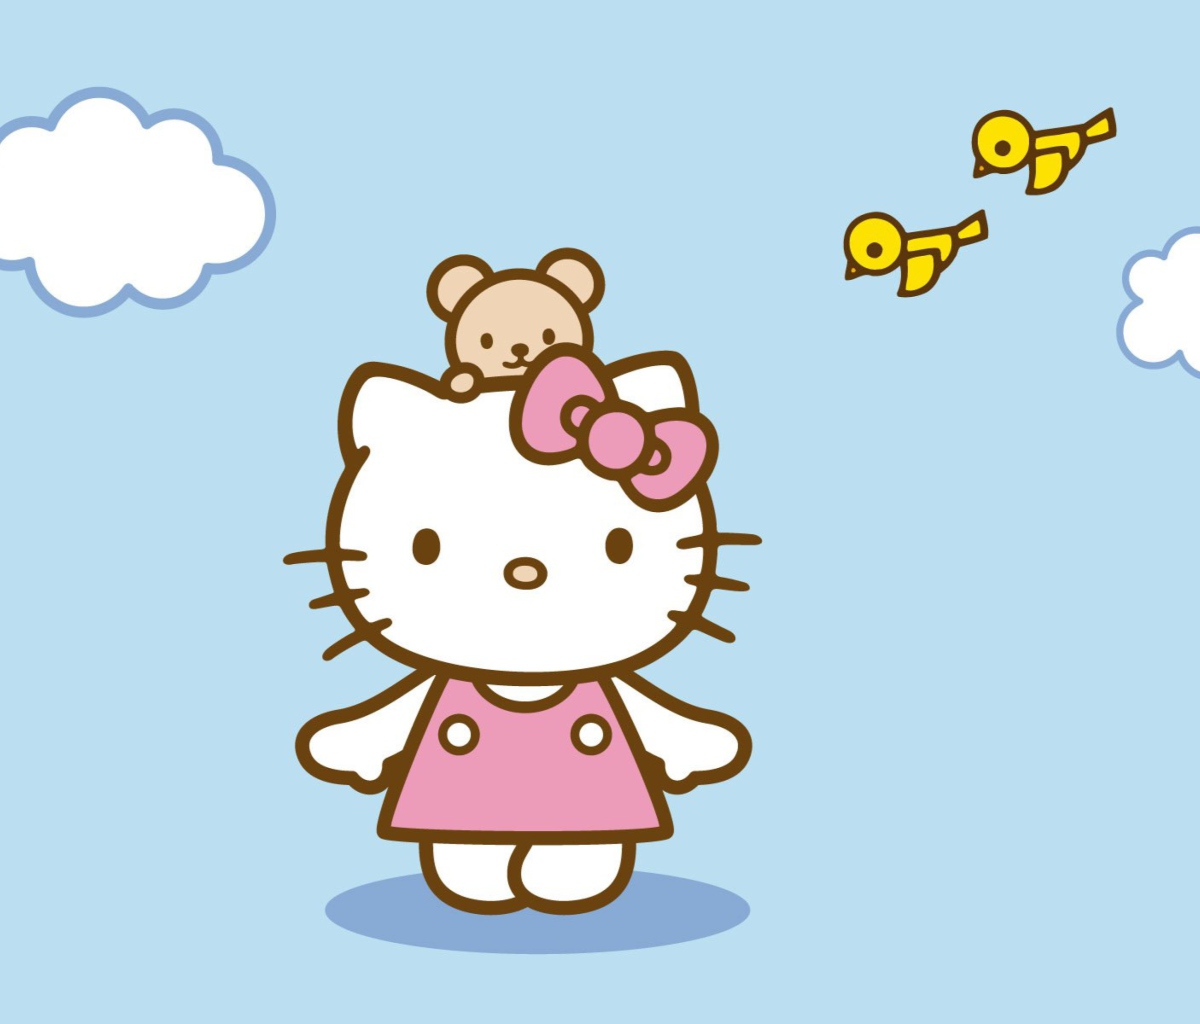 Обои Hello Kitty & Friend 1200x1024